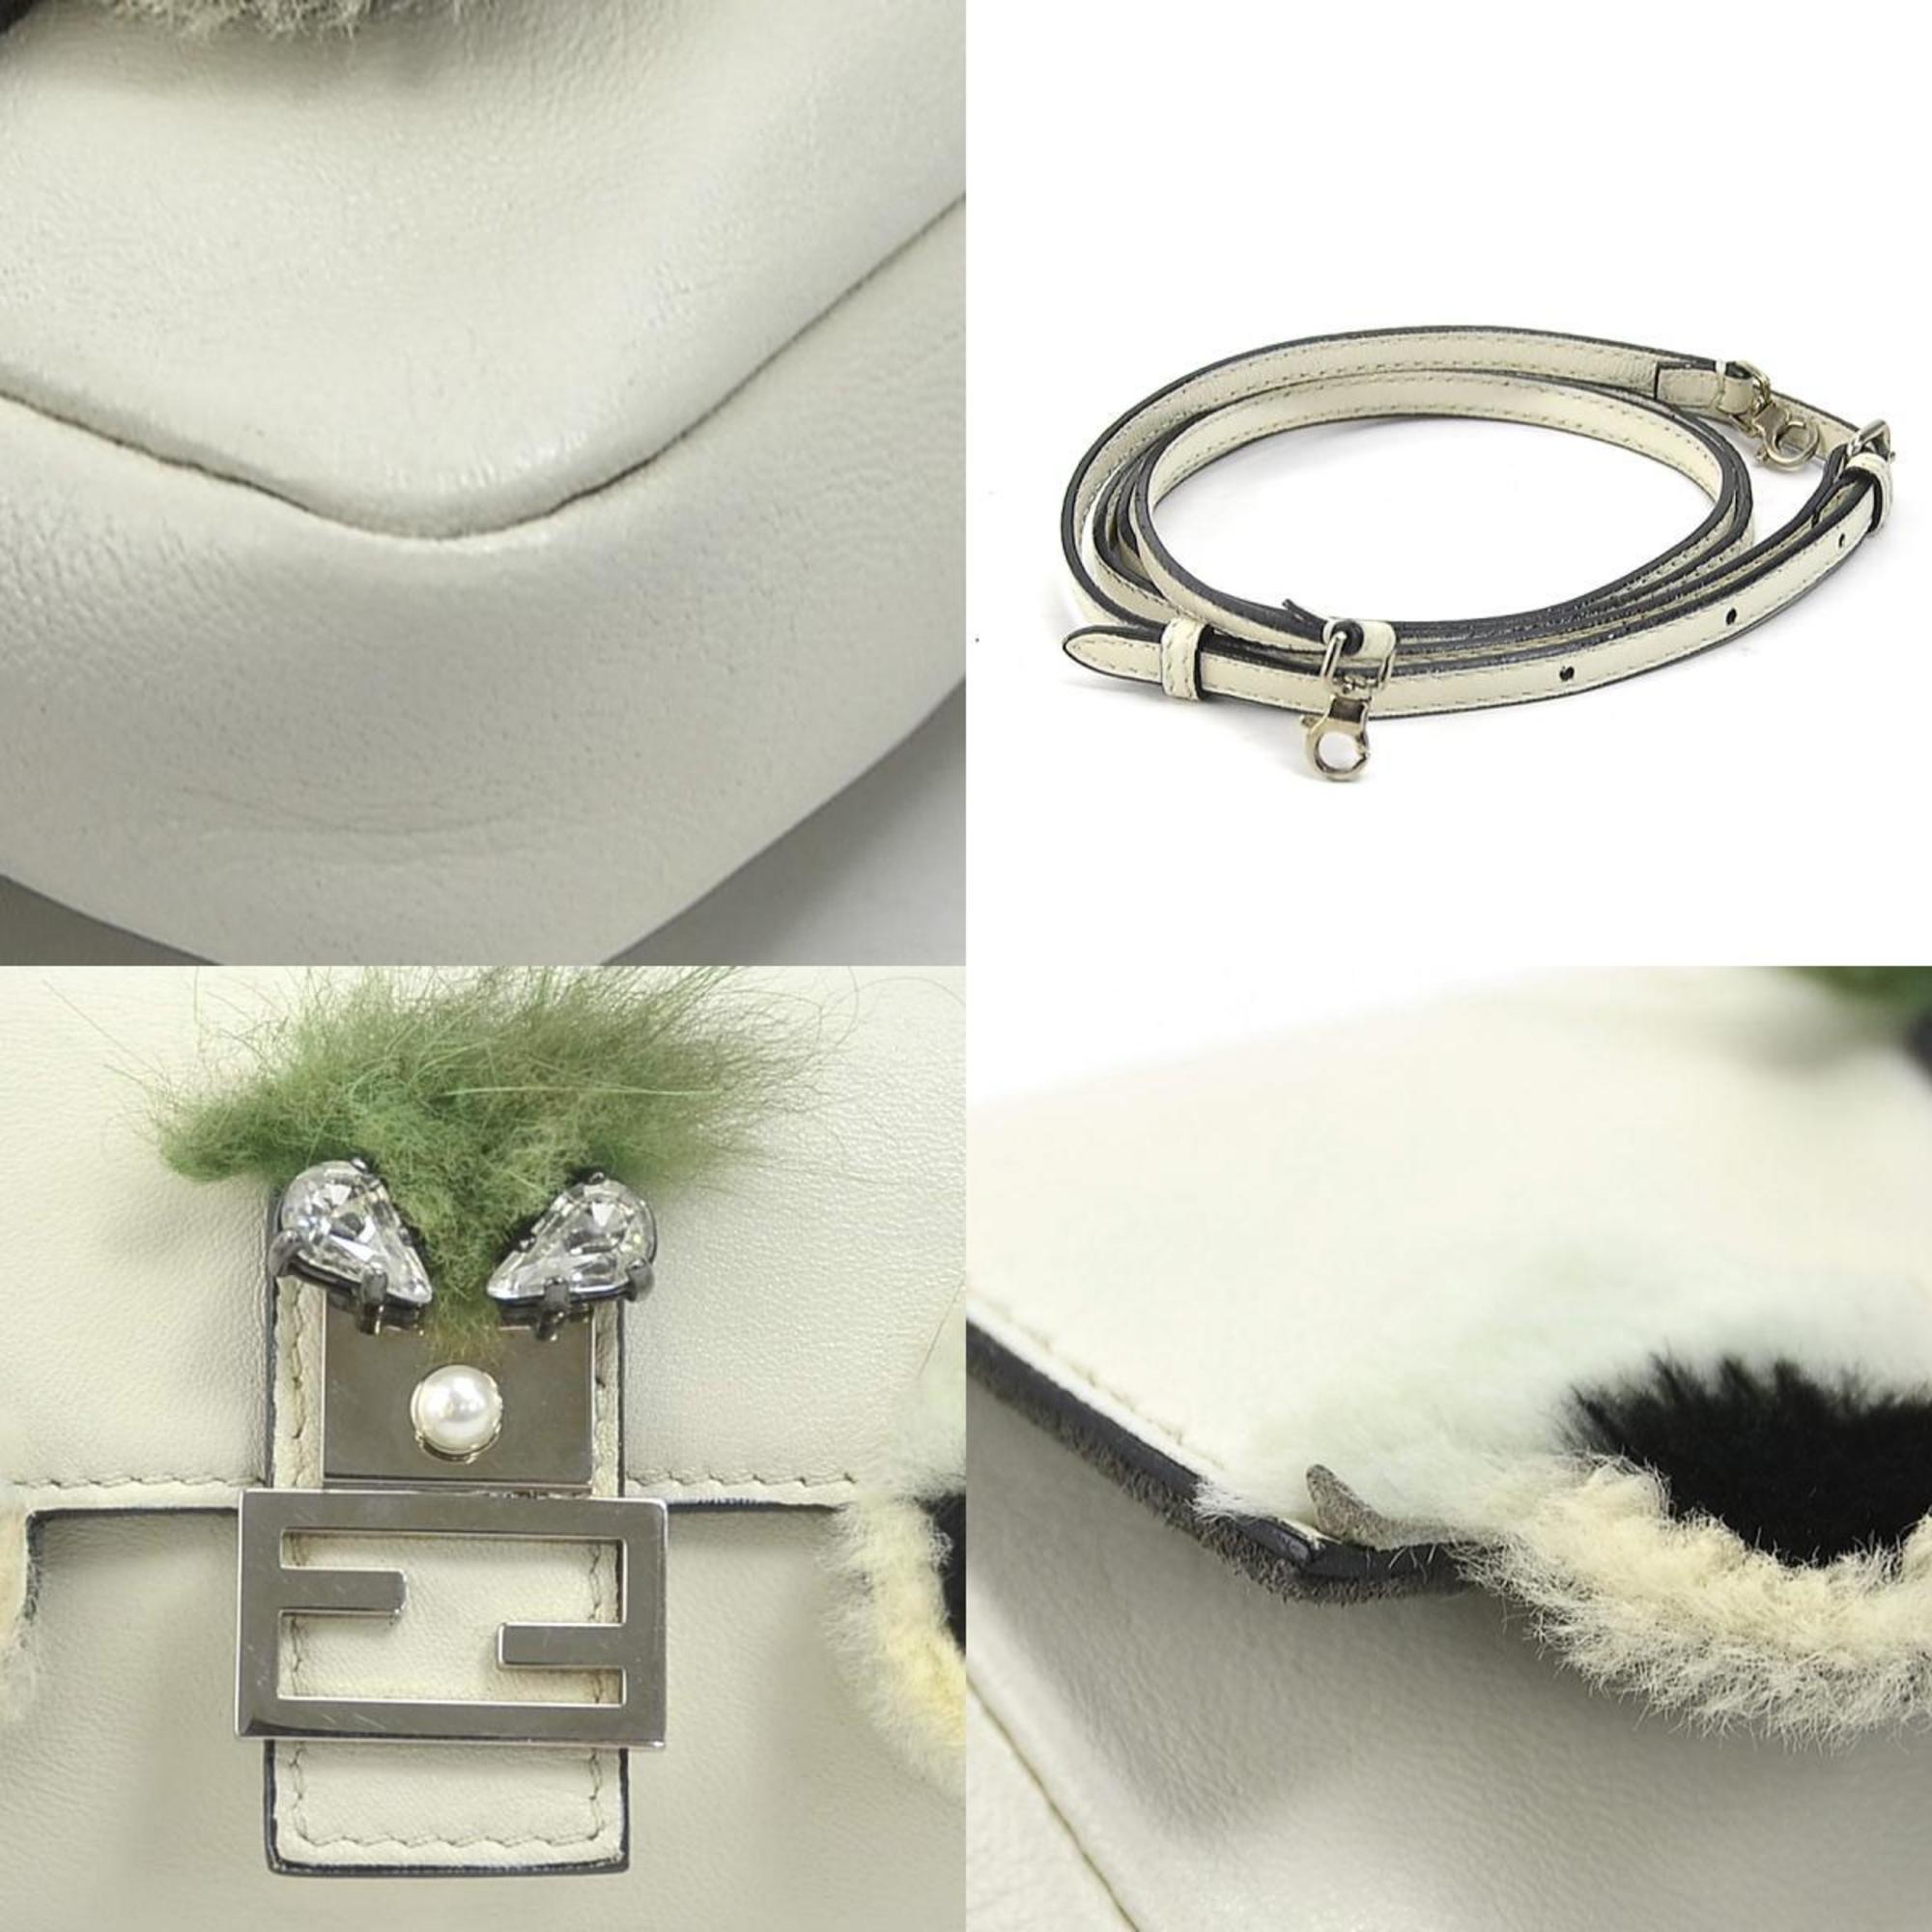 FENDI Handbag Shoulder Bag Monster Micro Baguette Leather/Fur Off-White/Green Silver Women's e58381g